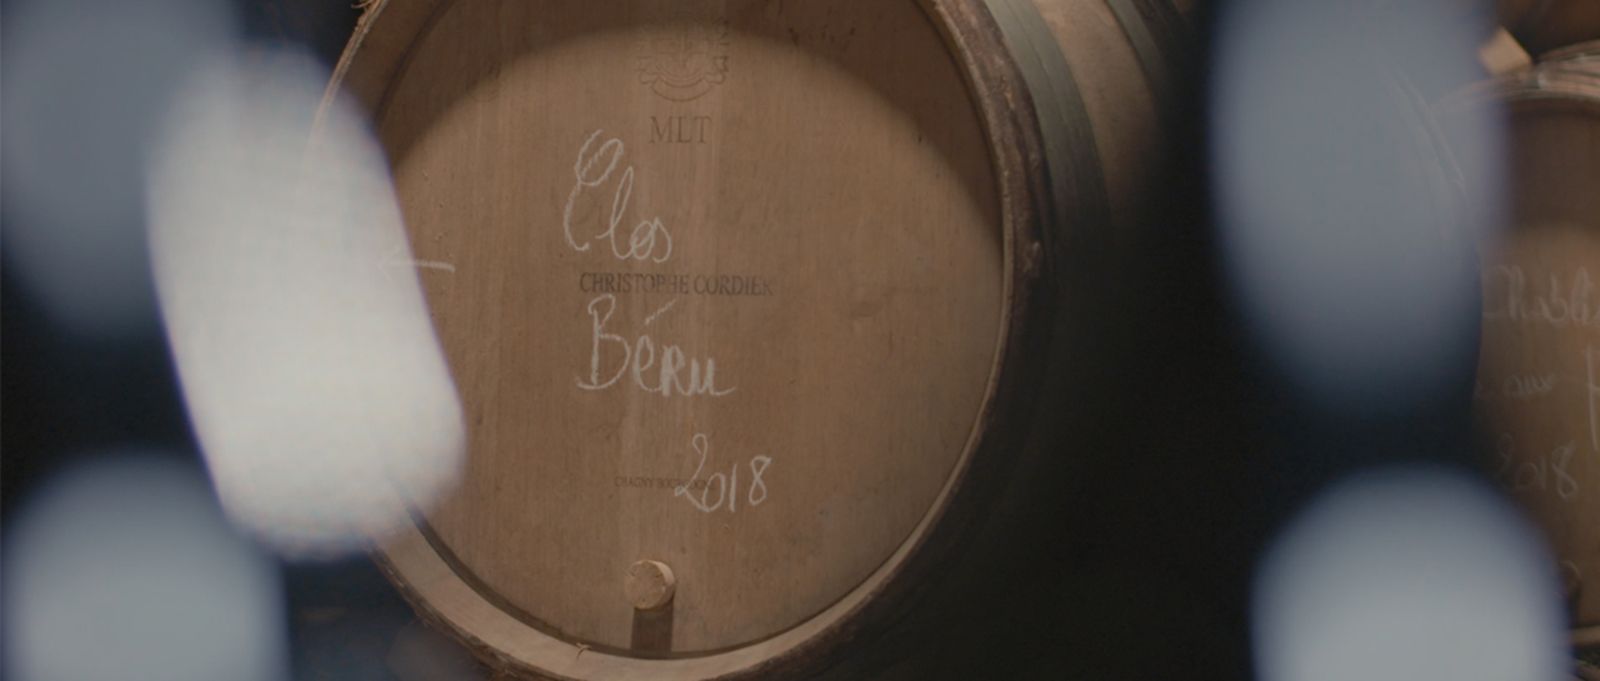 Wine of the Château de Béru